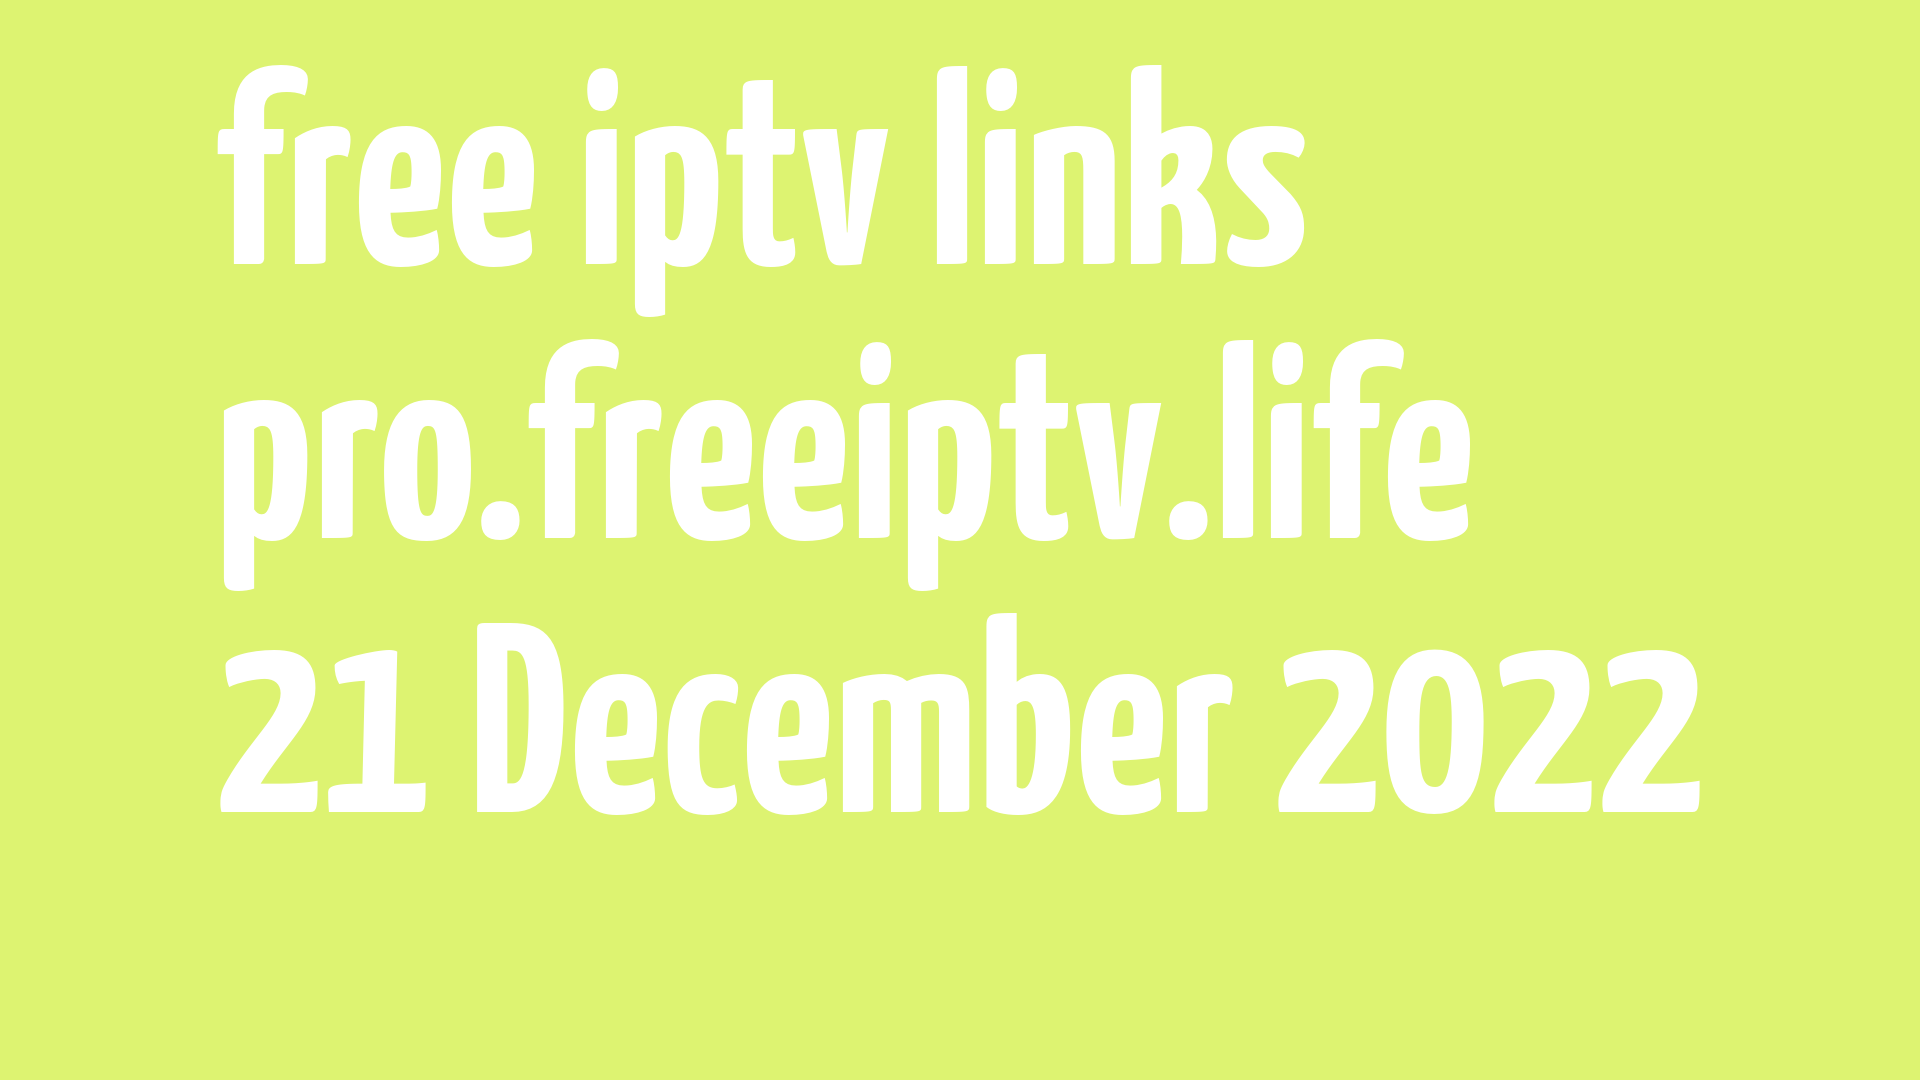 free iptv links 201222